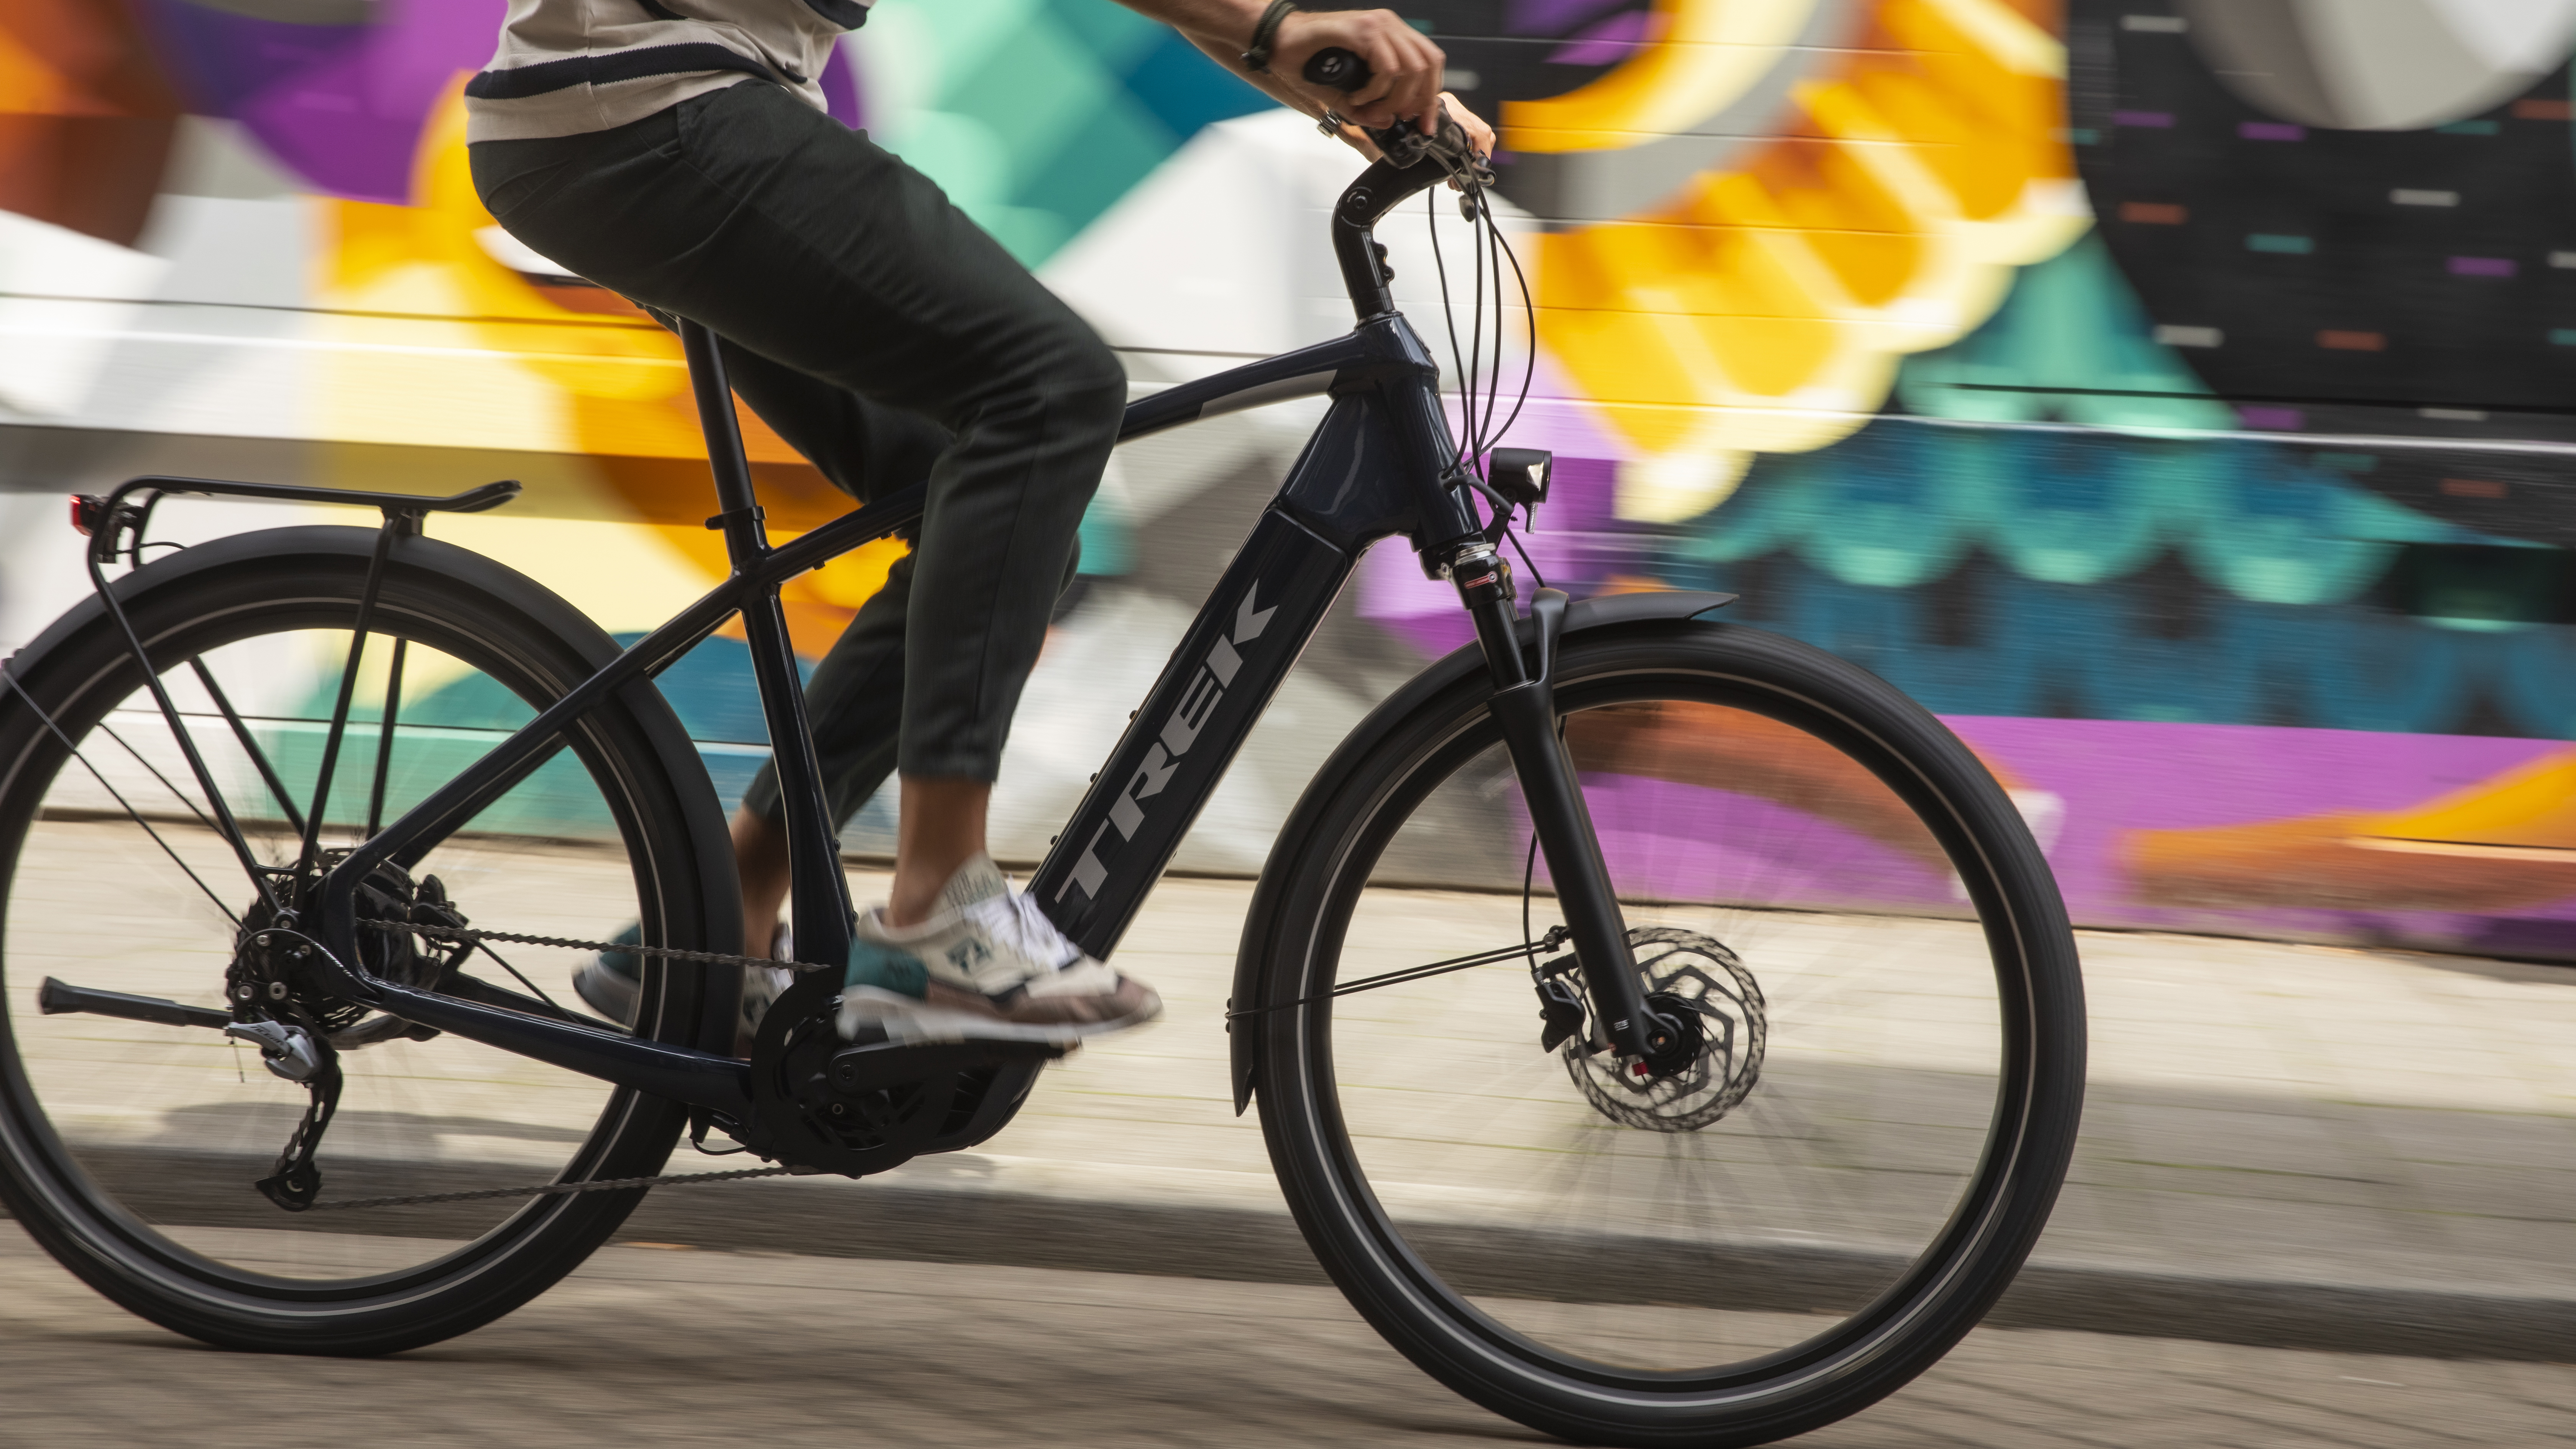 Zaklampen Grondig aanpassen Deze e-bike is verkozen tot dé elektrische fiets van 2020